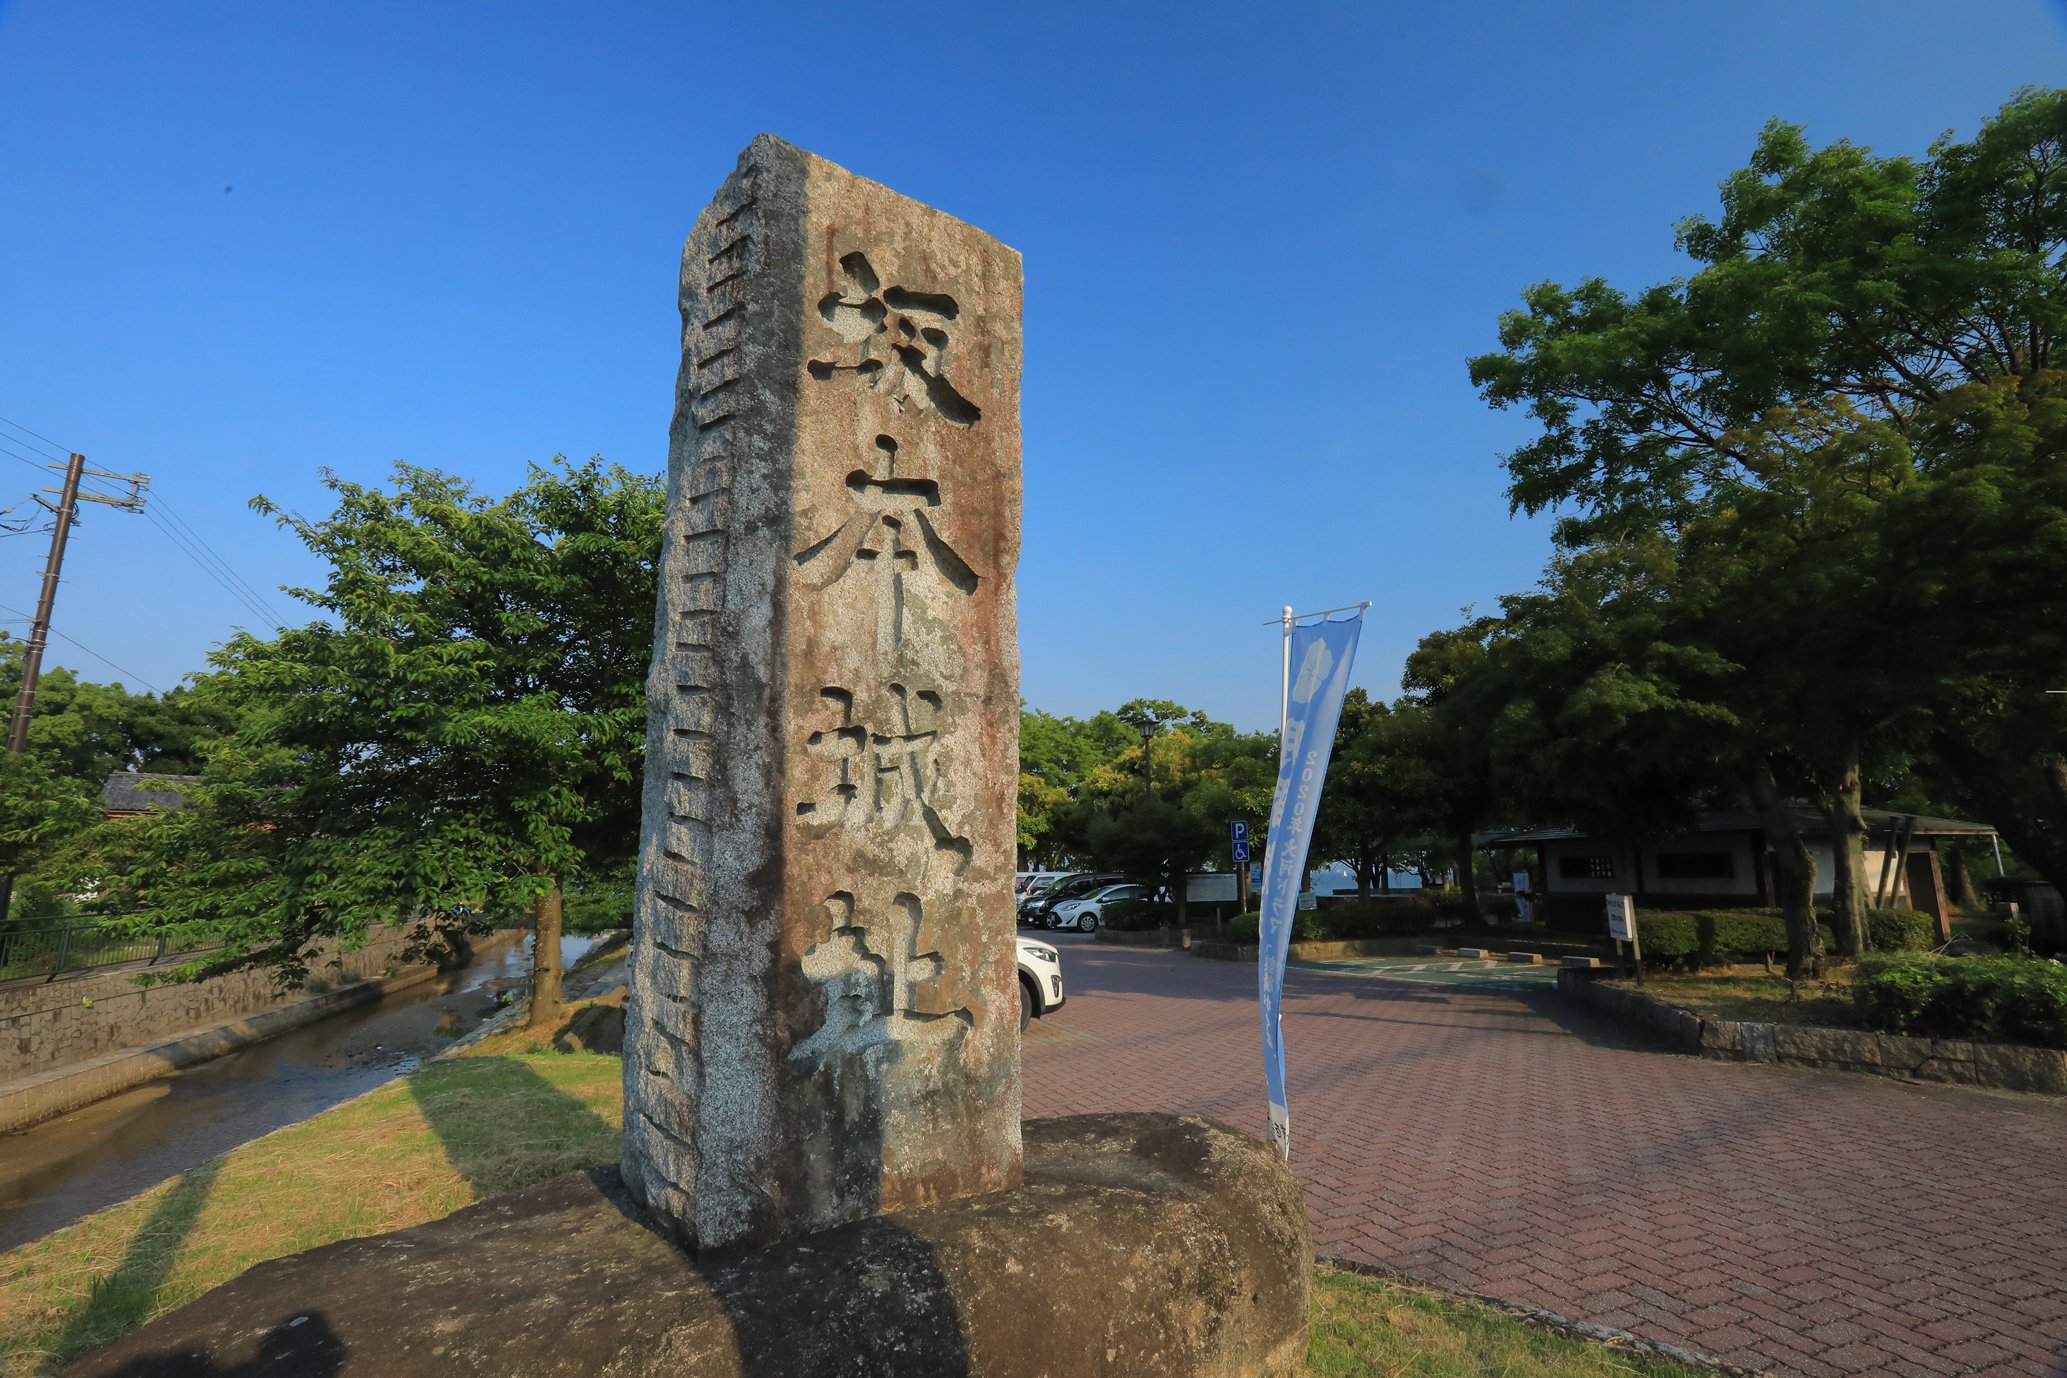 光秀の生涯にわたる本拠・坂本城から見た琵琶湖の景観  坂本城址